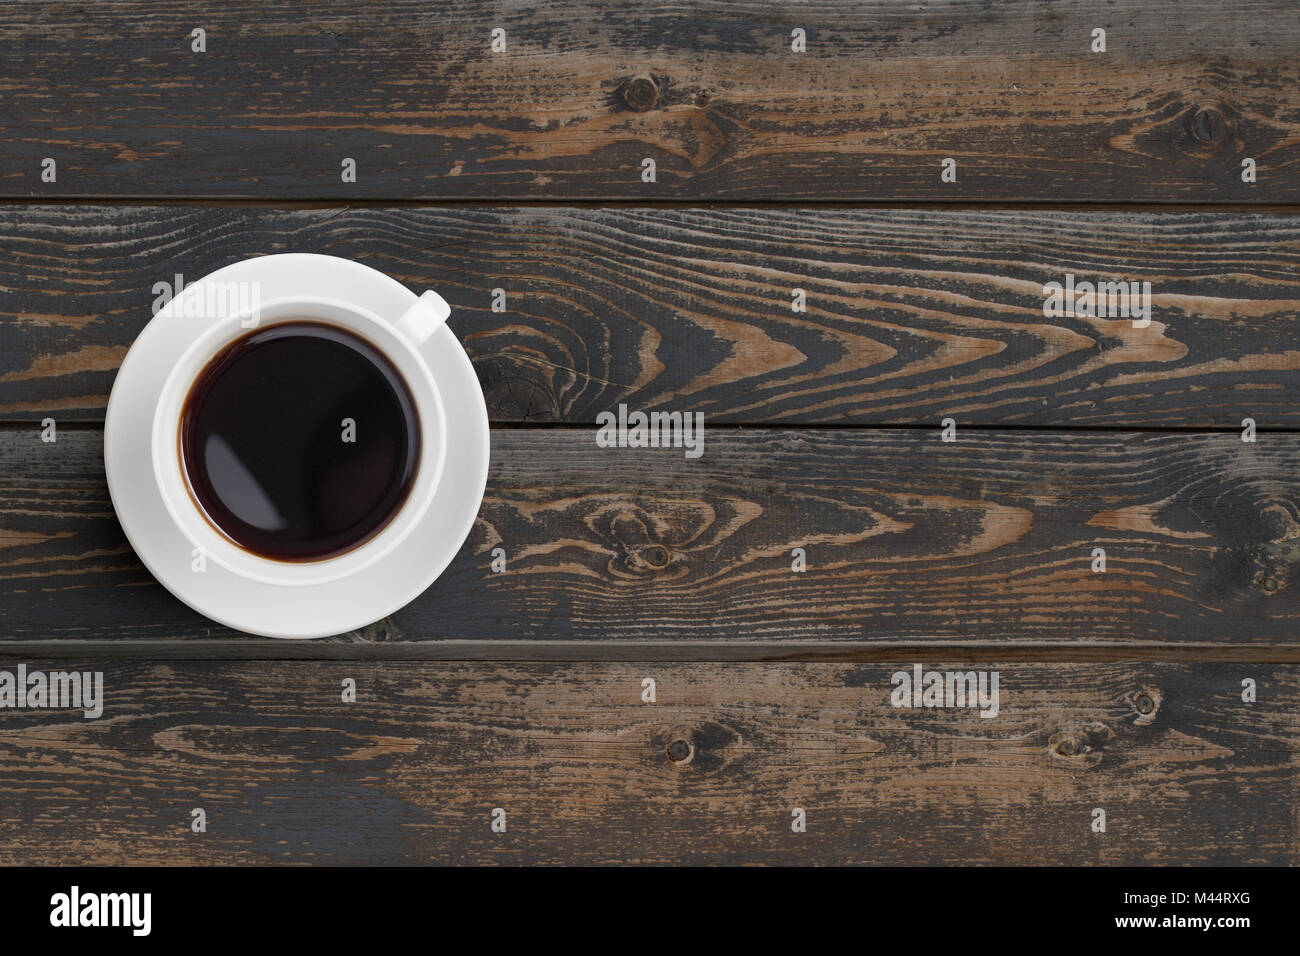 La tasse de café noir sur la table en bois sombre vue de dessus Banque D'Images